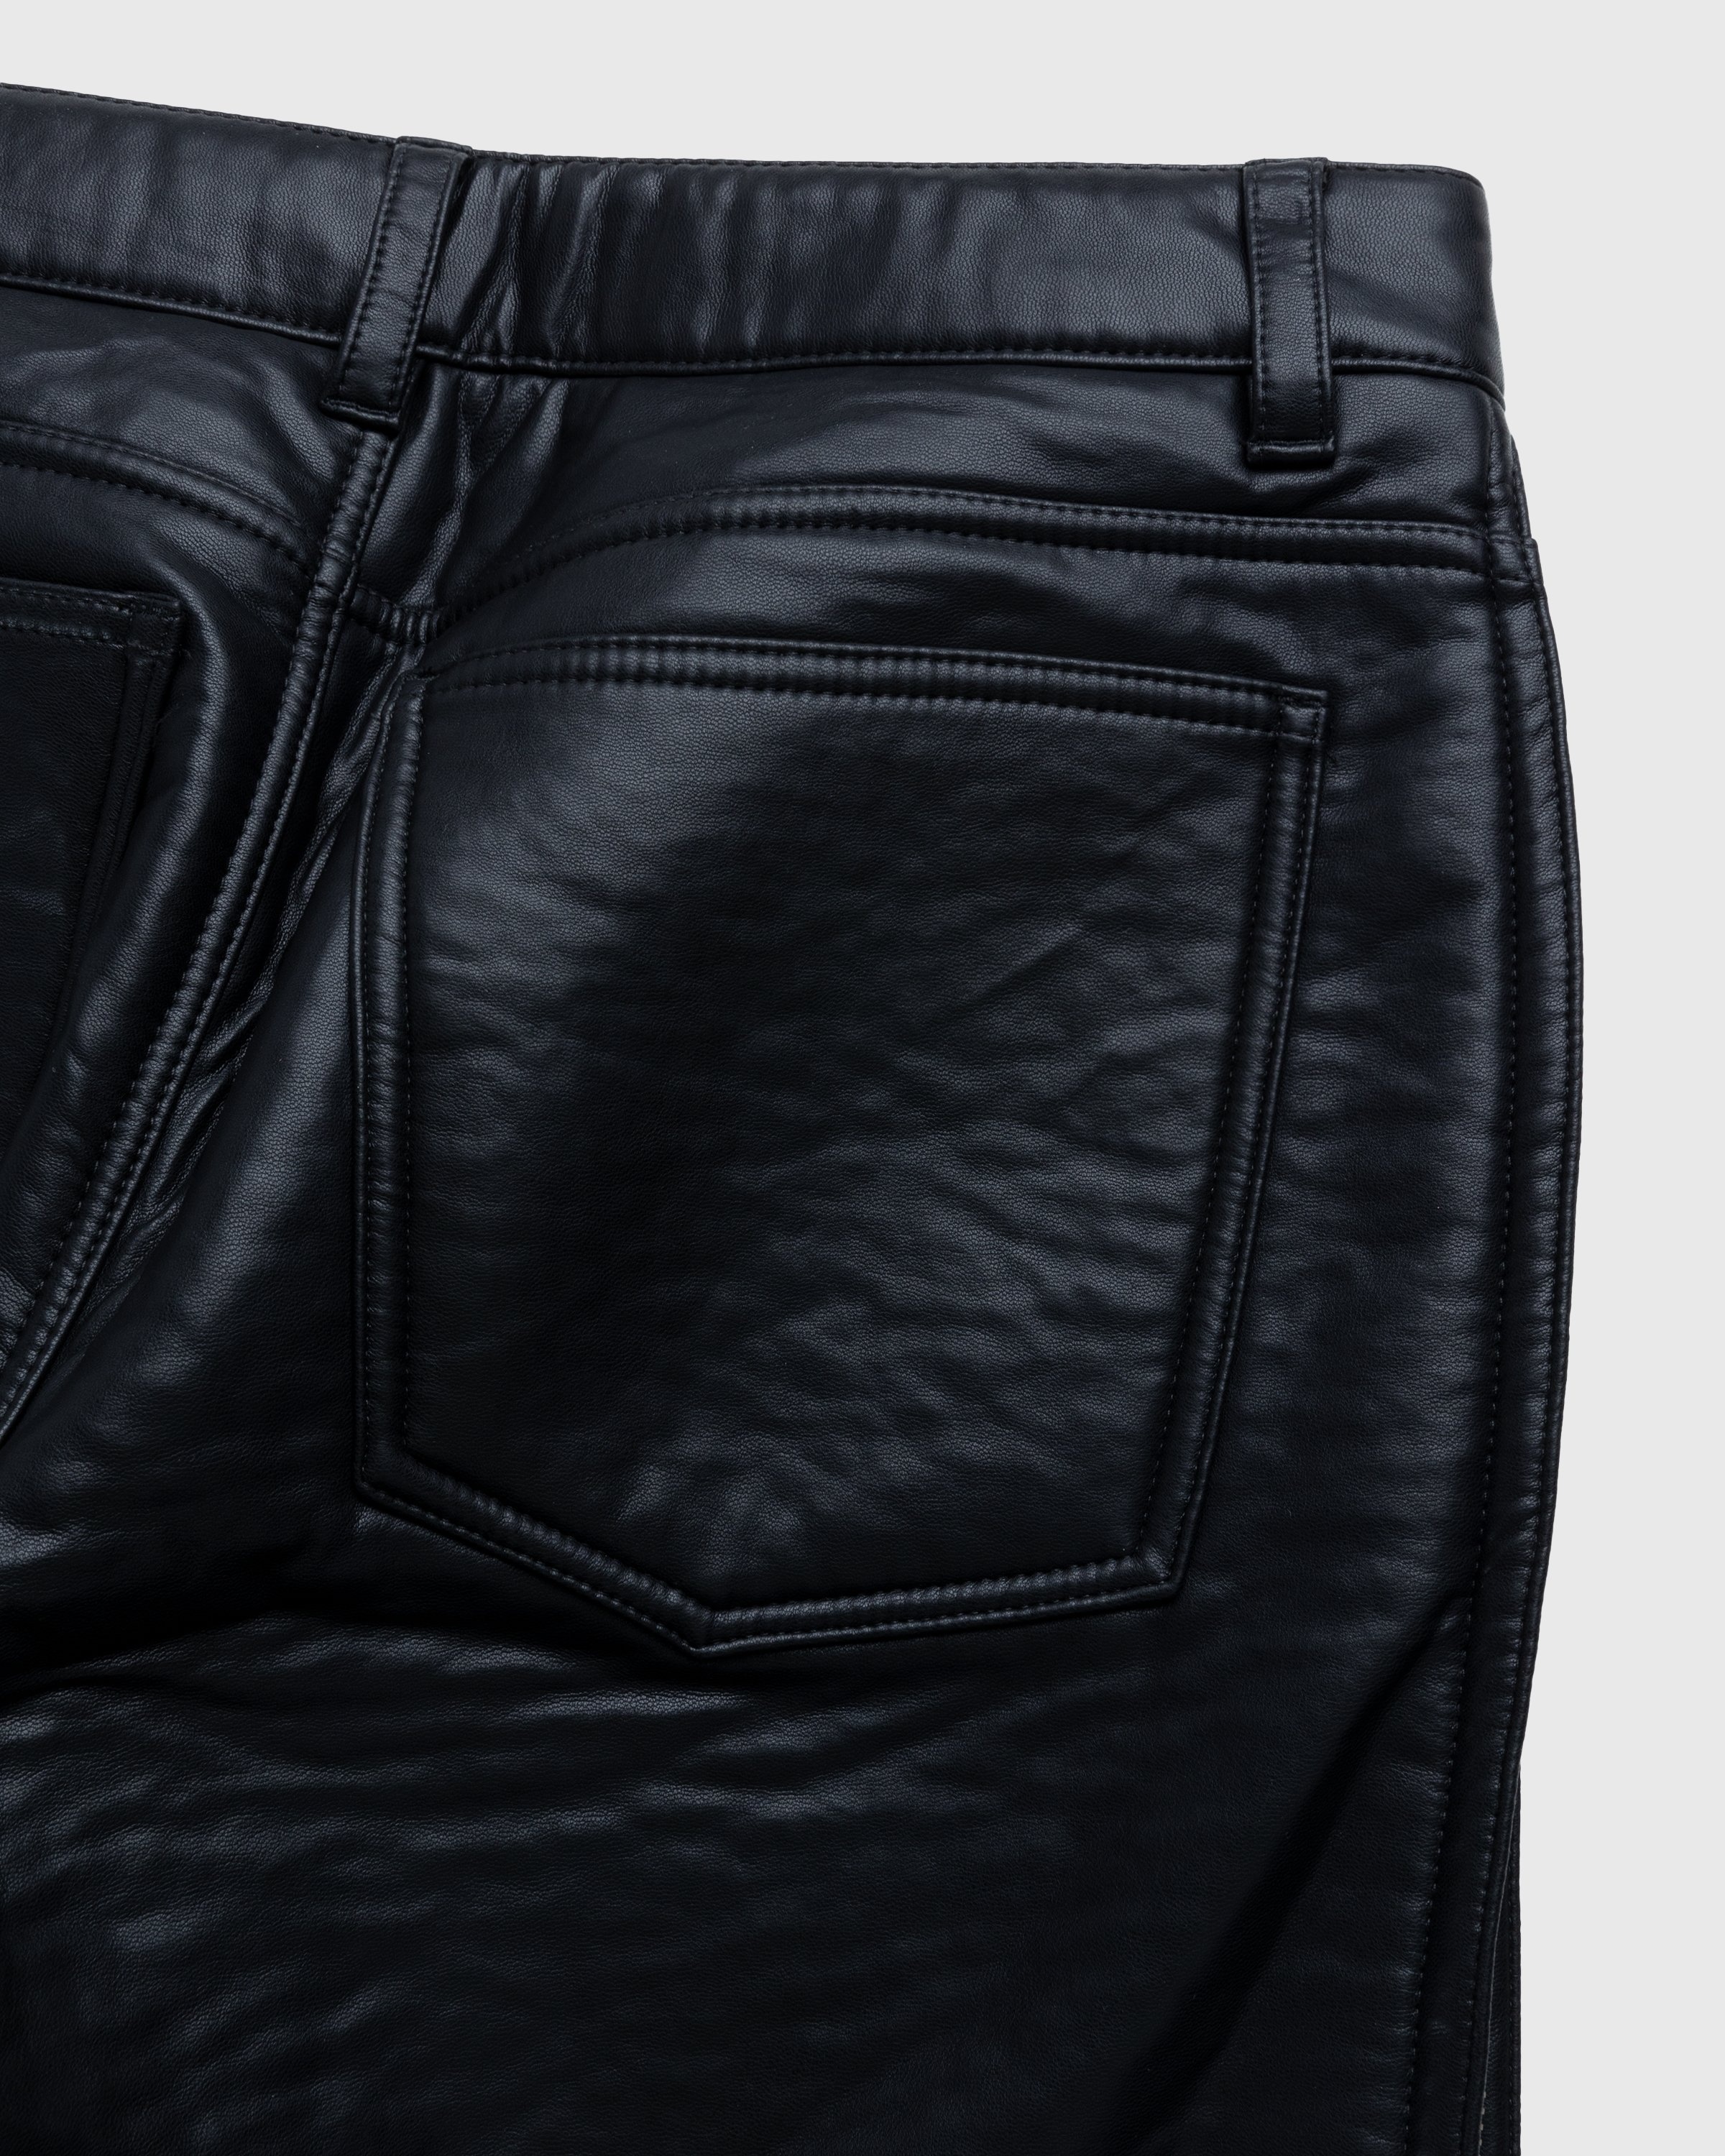 Diesel – Cirio Biker Trousers Black - Trousers - Black - Image 6